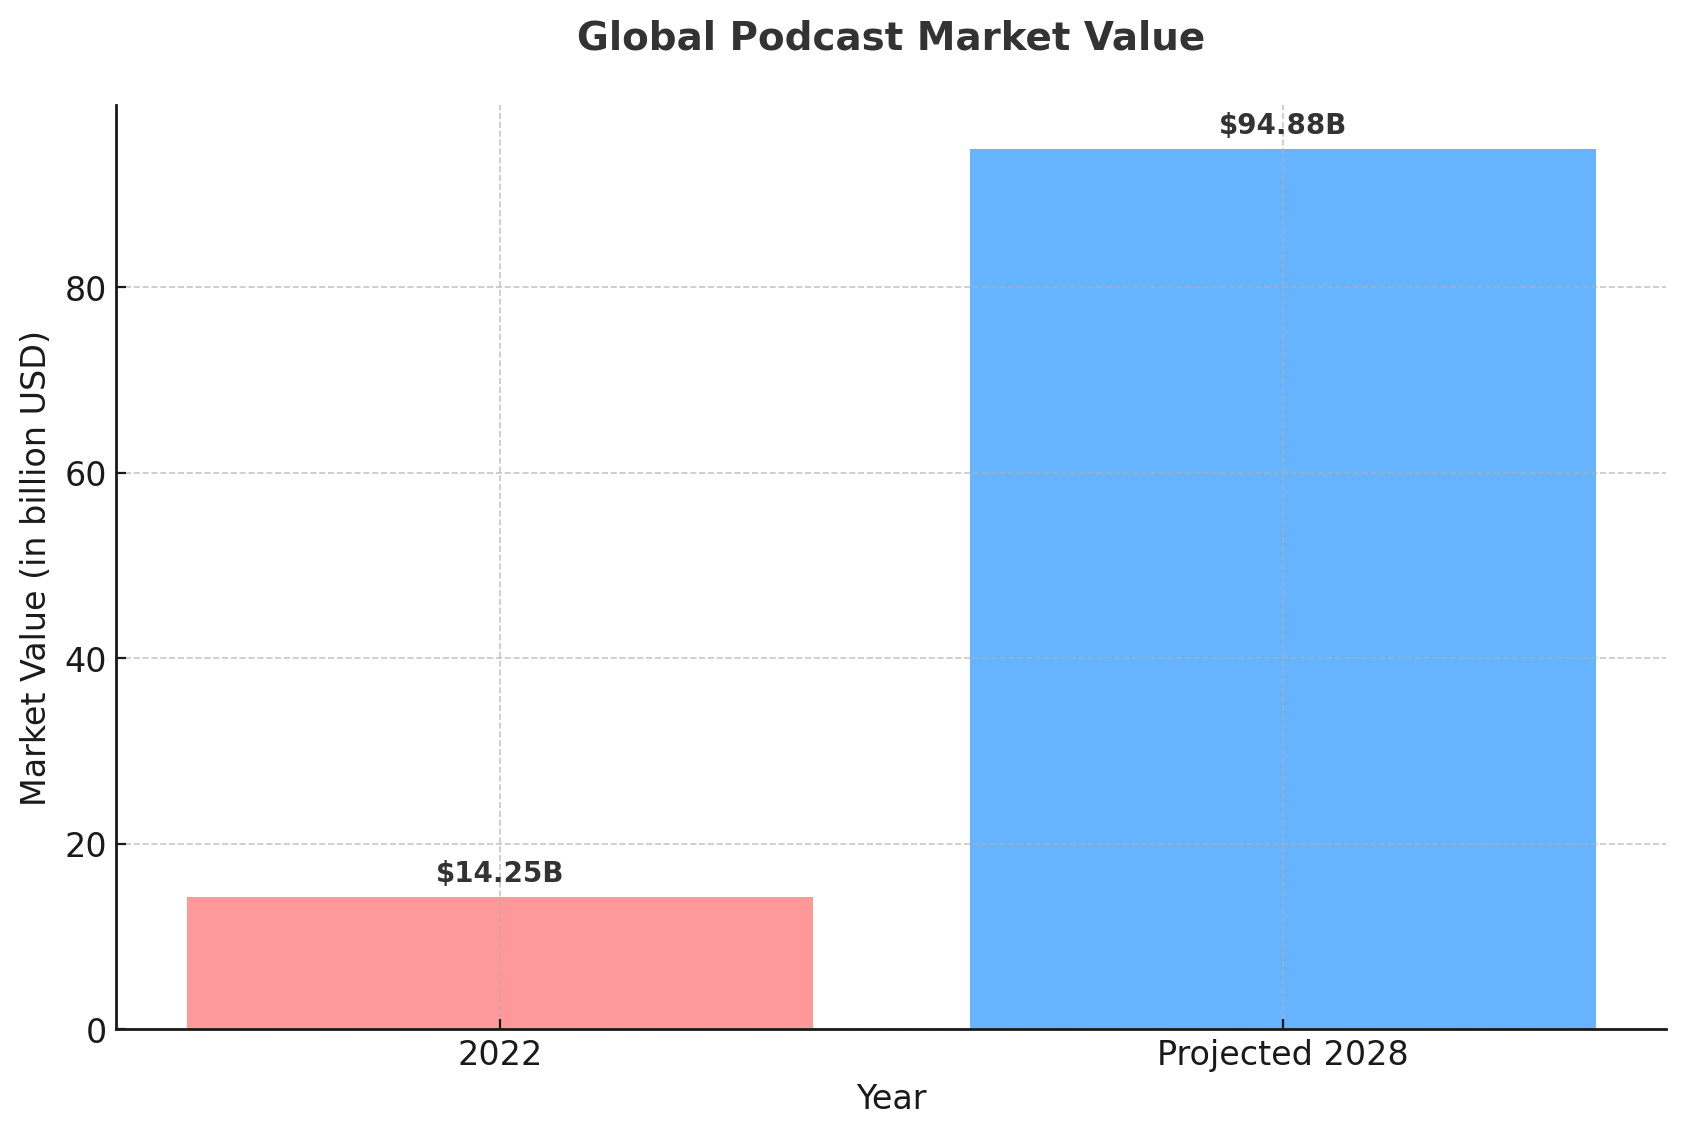 Global podcast market value